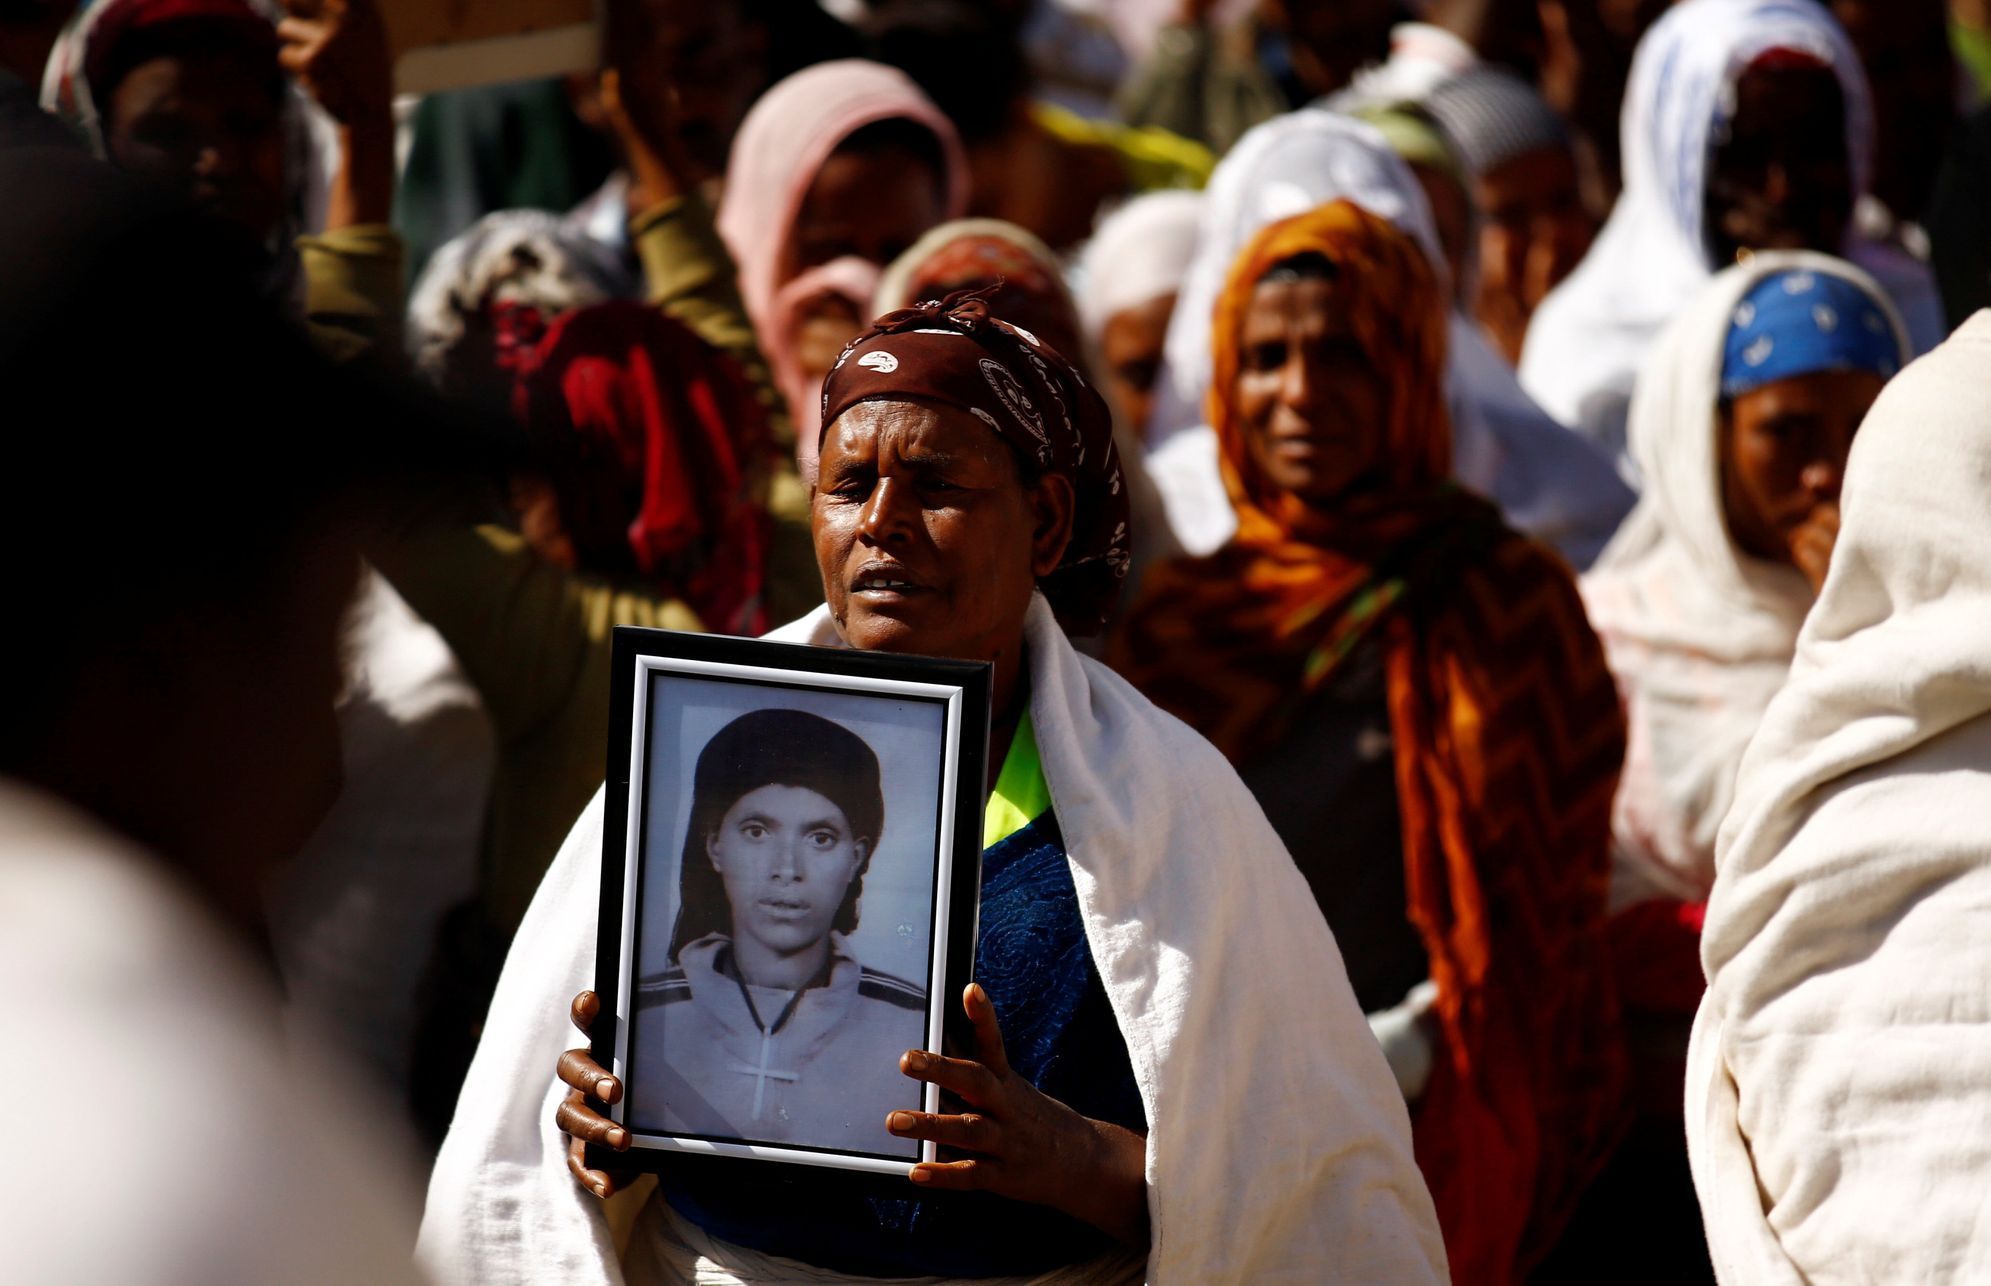 Pozůstalí obětí truchlí po sesuvu půdy na skládce v etiopské metropoli, při němž zahynulo 113 lidí